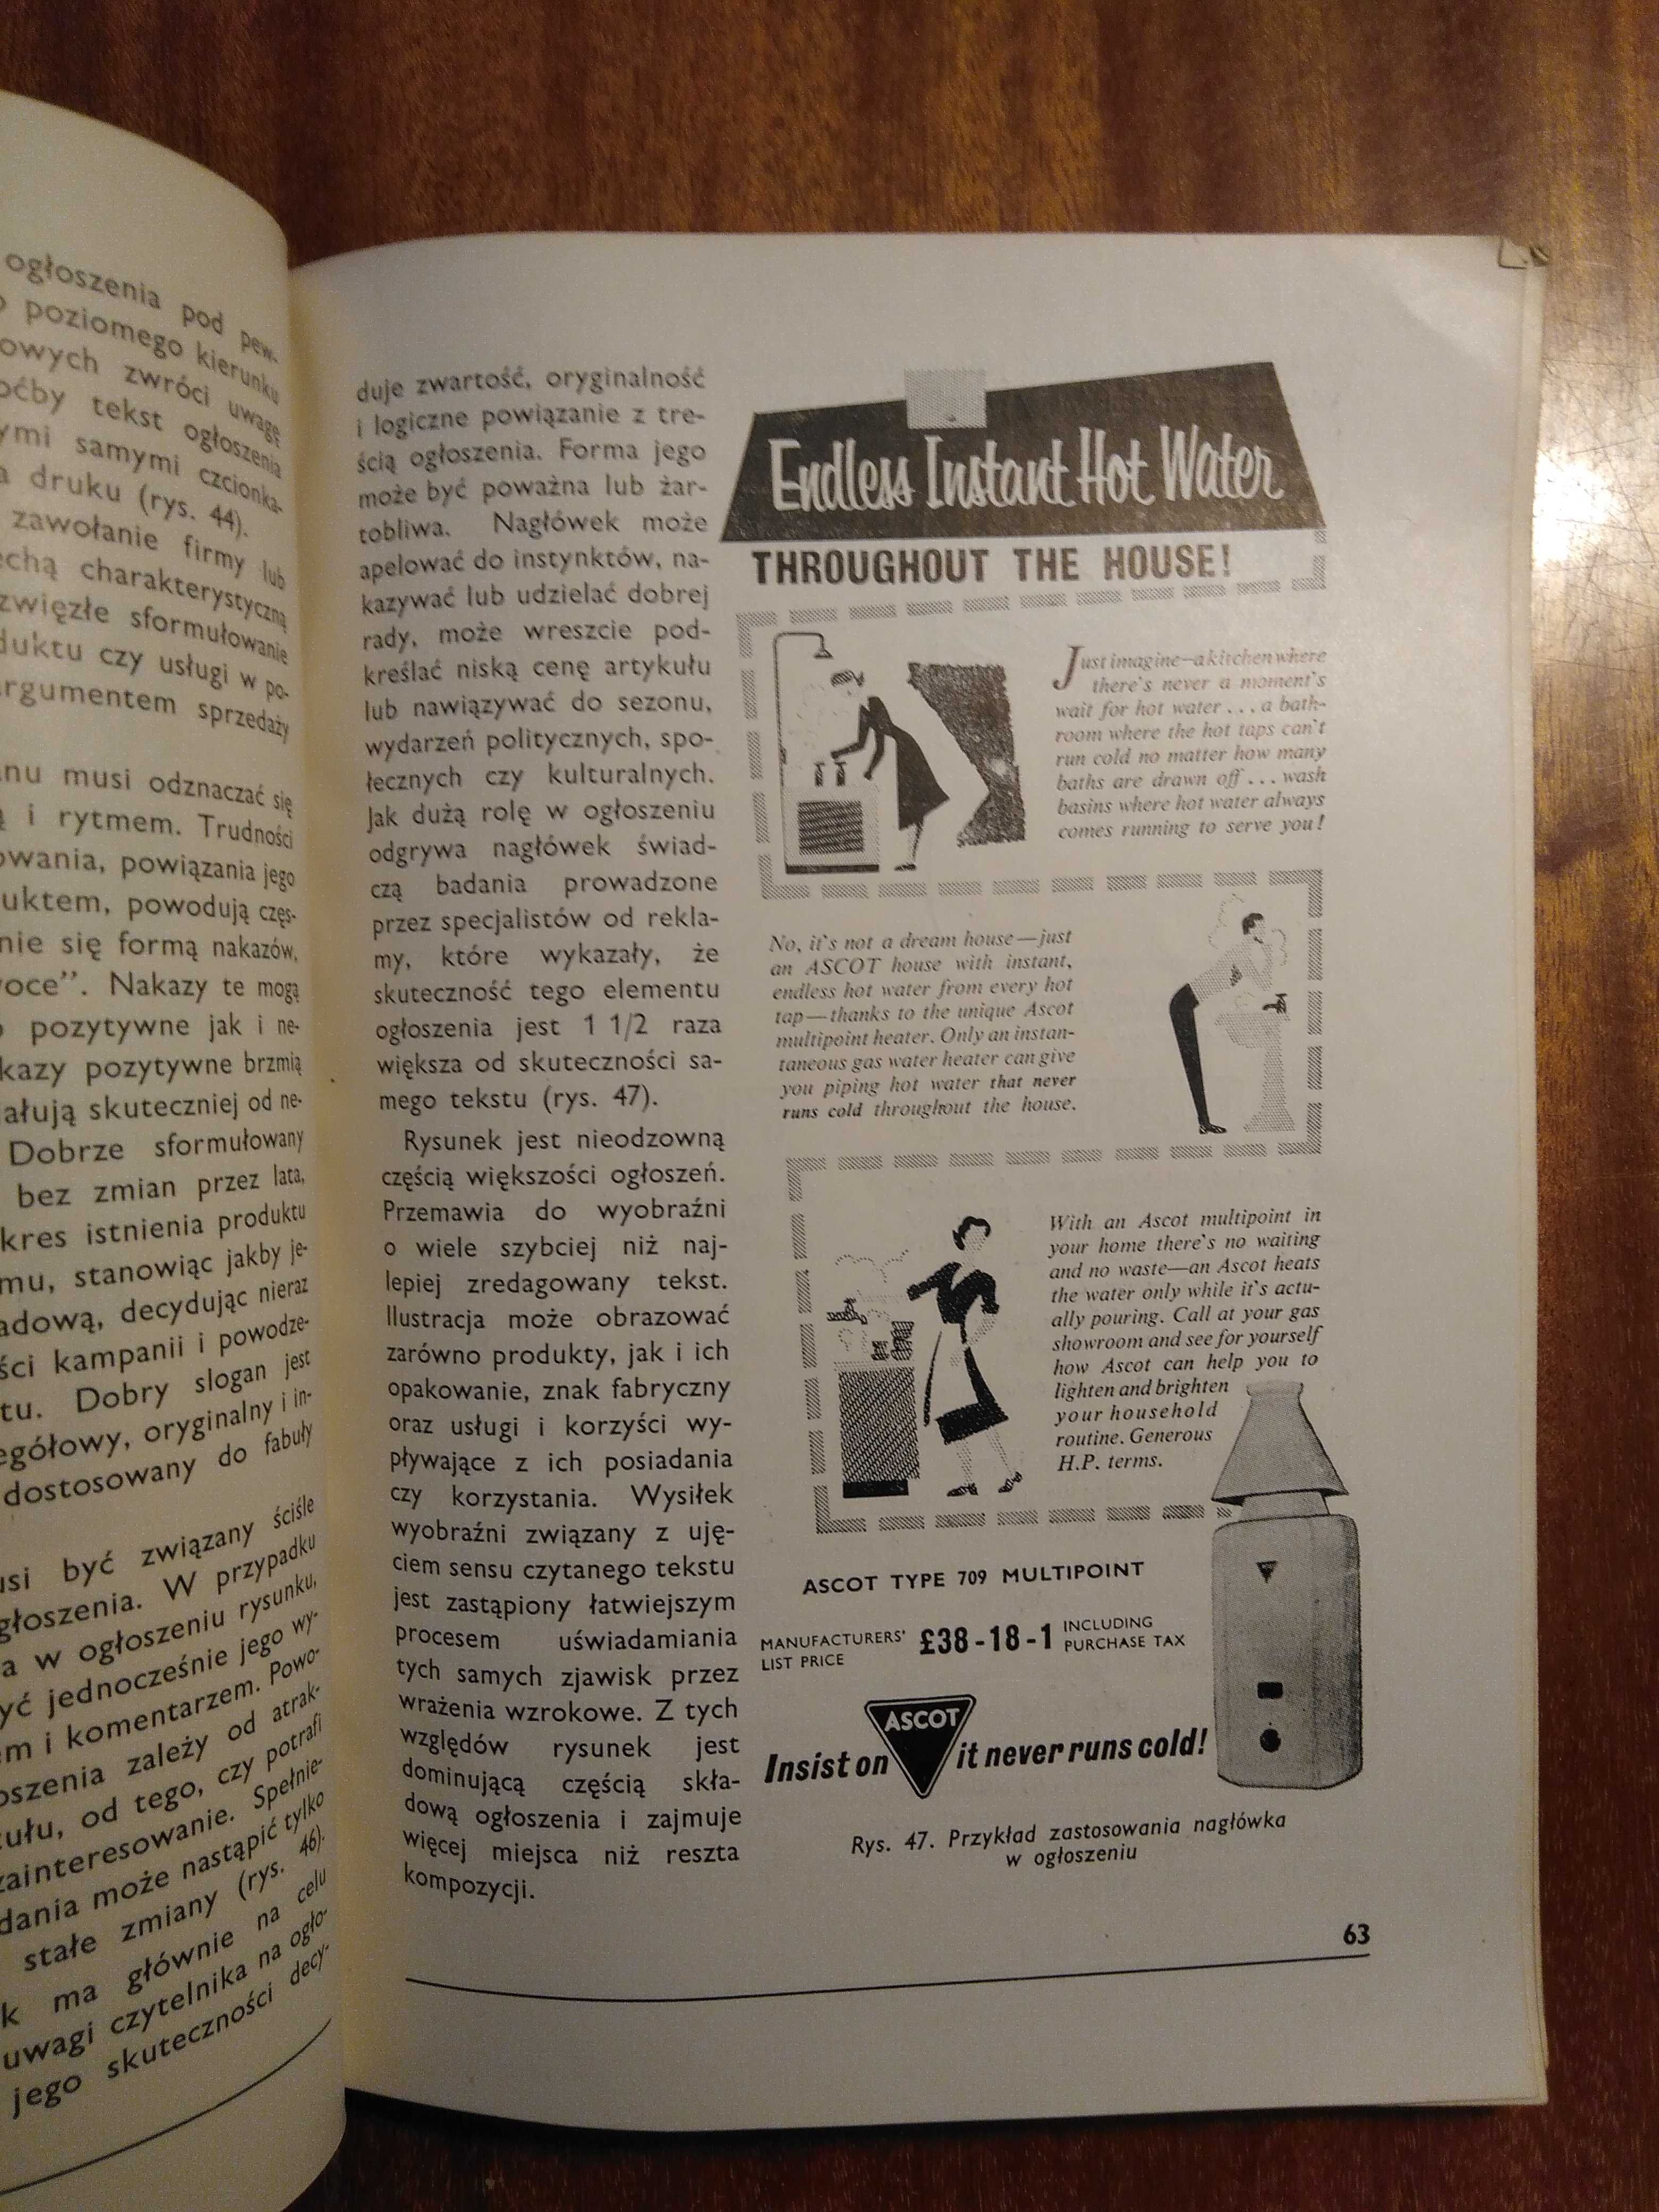 Reklama - podręcznik dla szkół handlowych z 1962